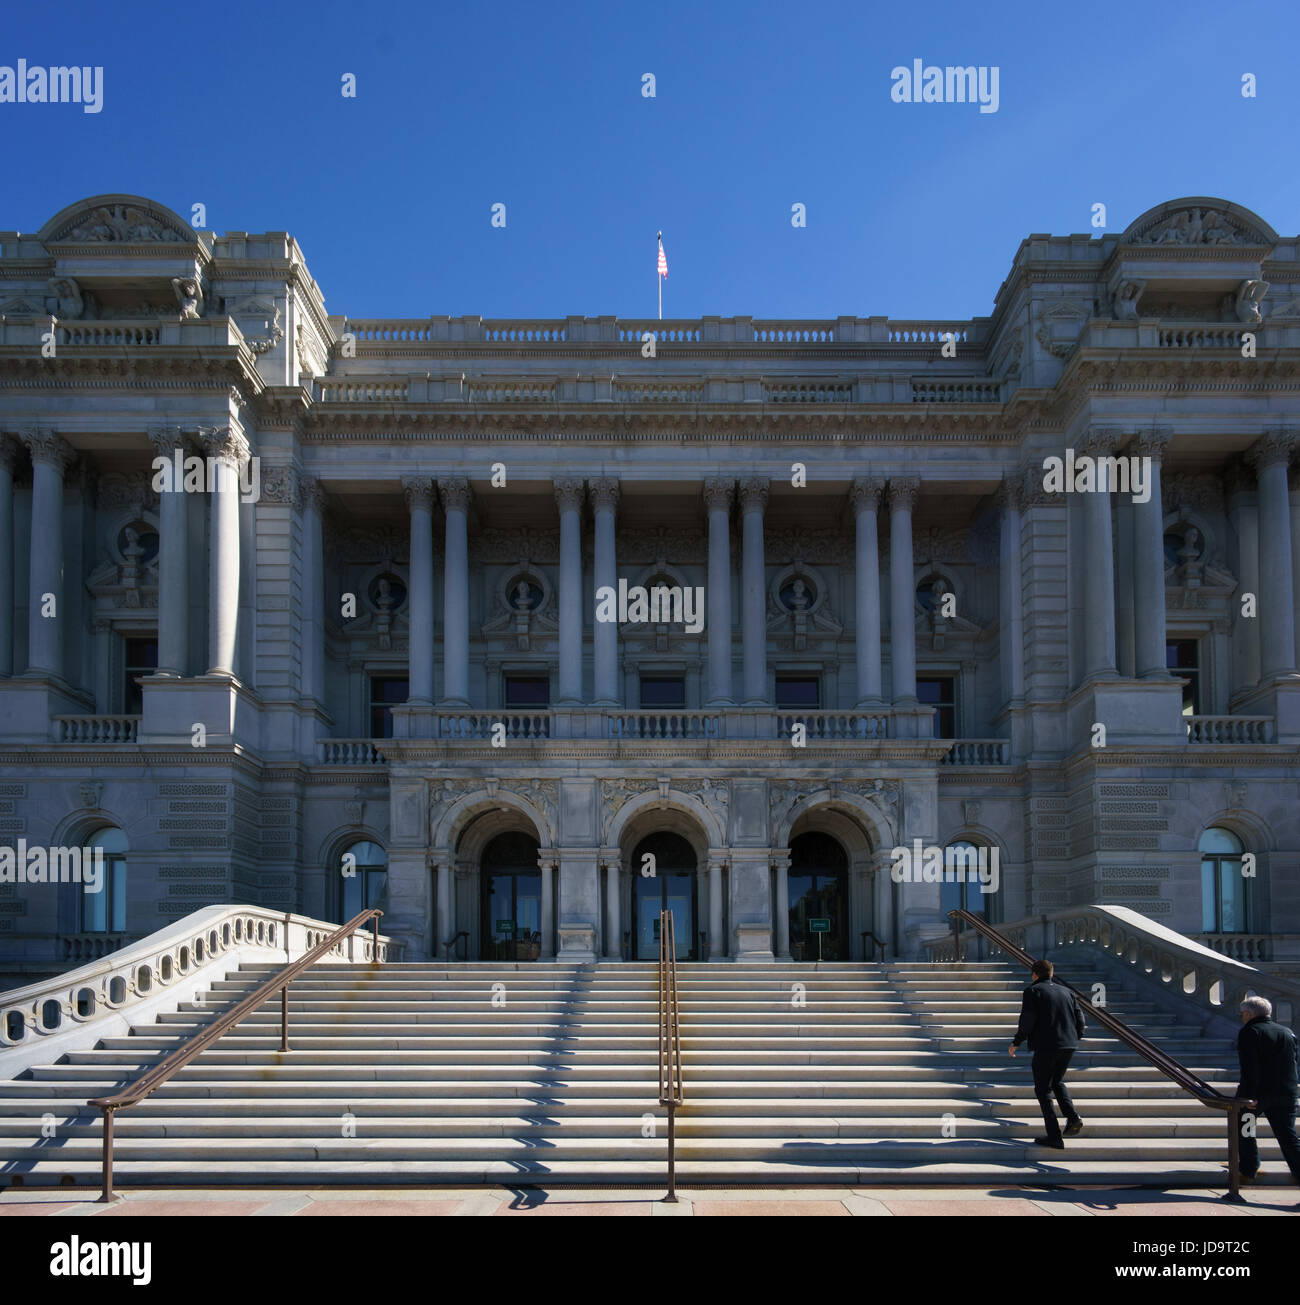 La façade de l'immeuble décoré avec des étapes et de l'arrière-plan les gens contre ciel bleu clair. Washington capital usa 2016 automne Banque D'Images